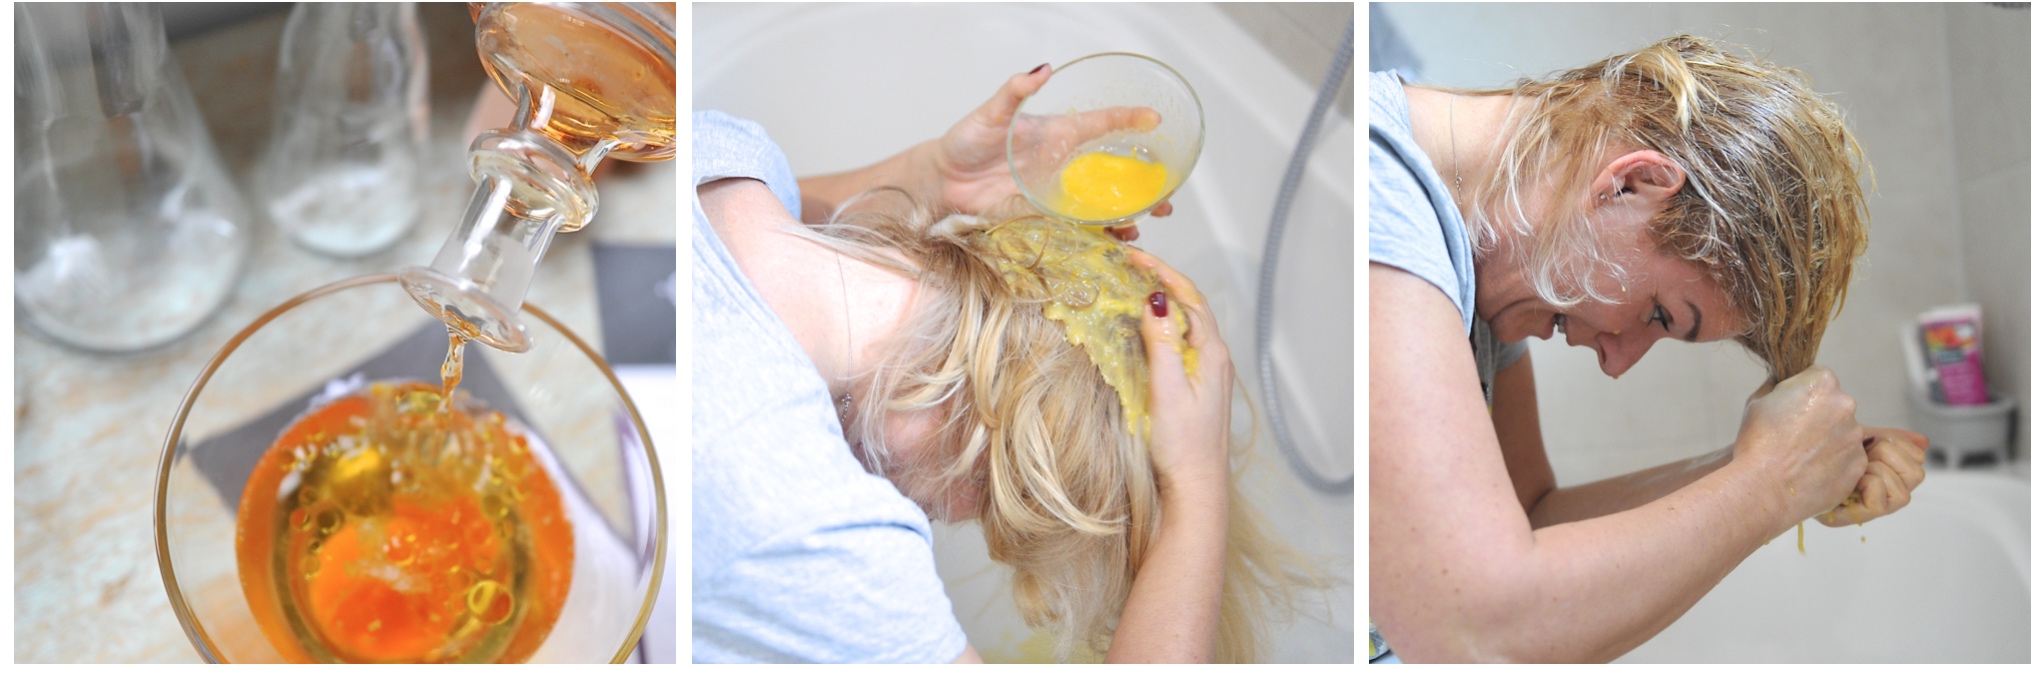 Das Beauty-Wunder Ei im Einsatz für die Haare. Drei Bilder von Rita Davidson, wie sie eine Bier-Ei Maske in die Haare einbringt.